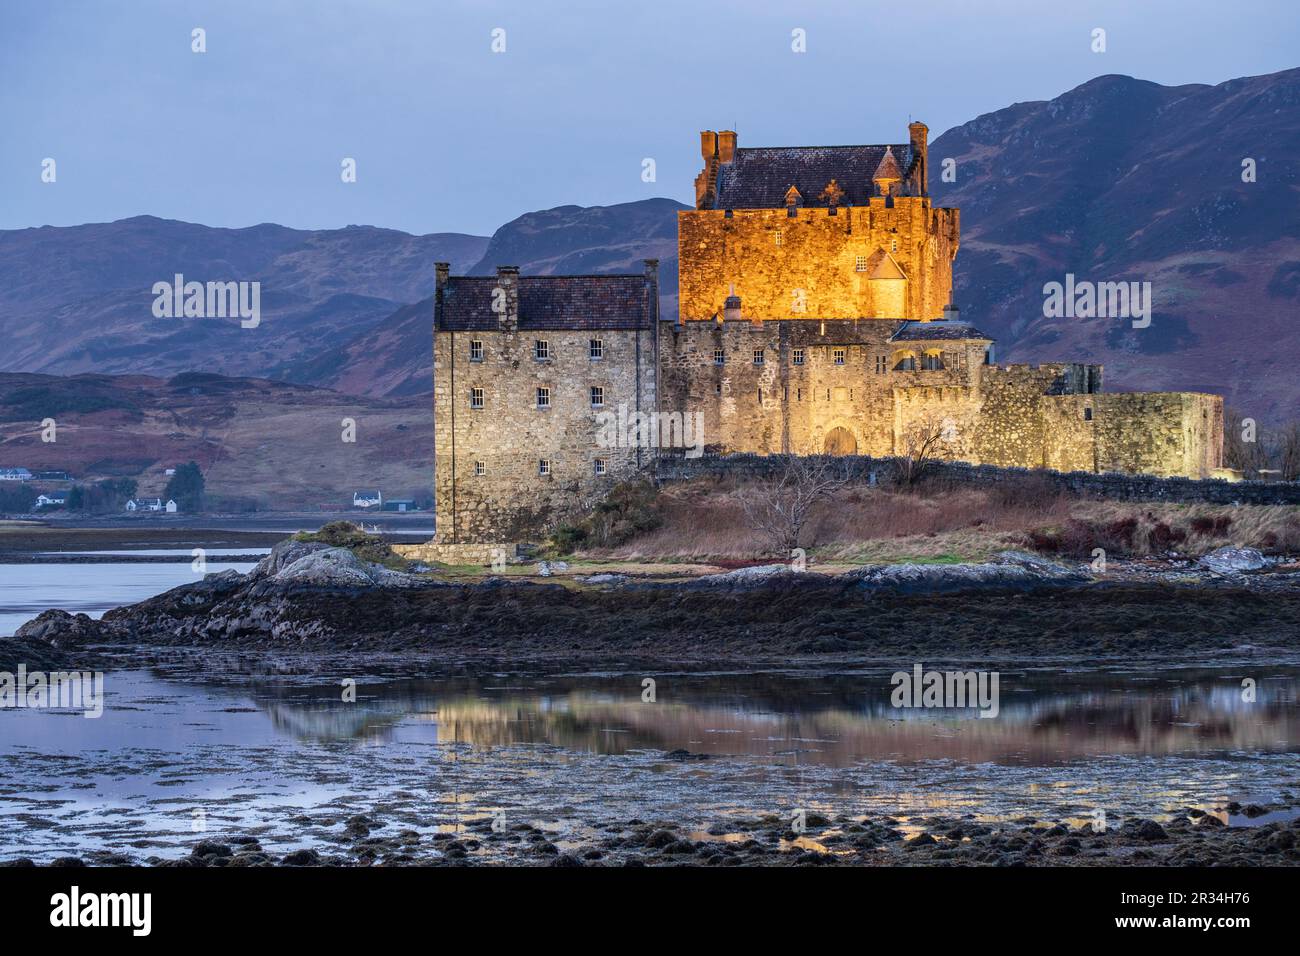 castillo de Eilean Donan, siglo XIII, Kyle of Lochalsh, Highlands, Escocia, Reino Unido. Stock Photo